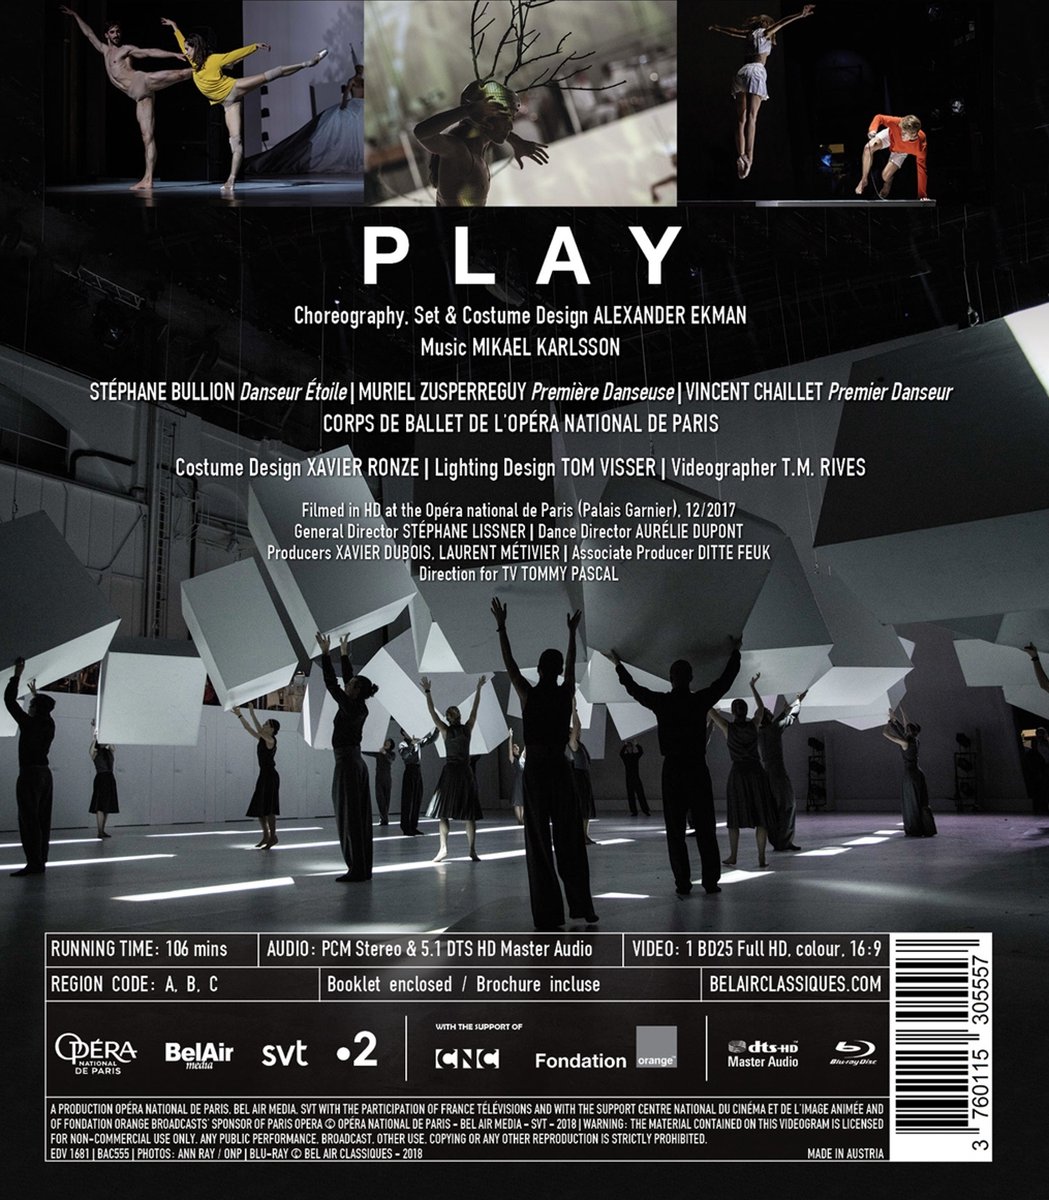 Ballet De L'Opéra National De Paris - Play (DVD), Ballet de L